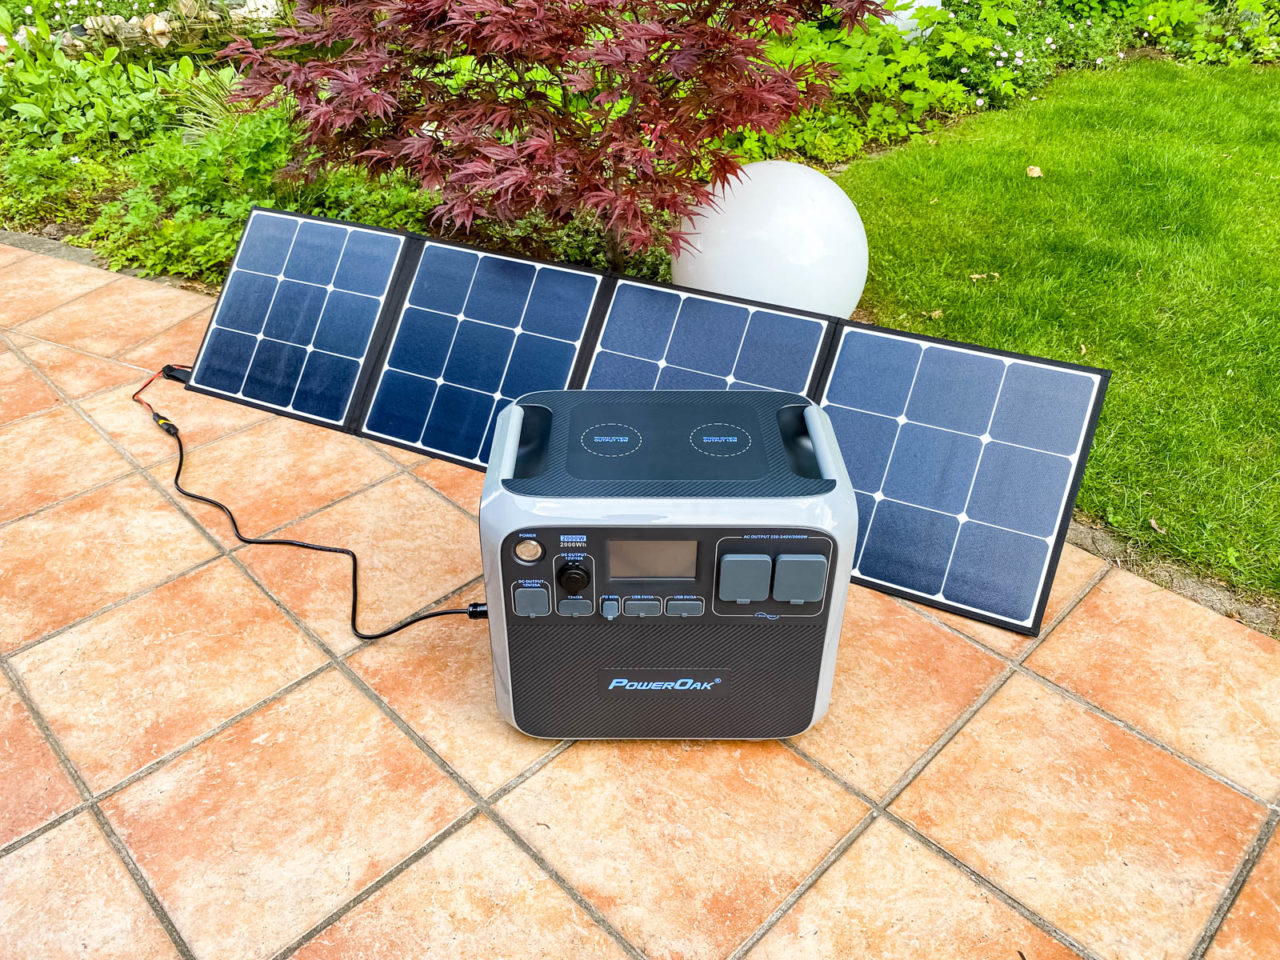 PowerOak Bluetti SP120 Solarpanel Test - Die Solartasche lädt eine Powerstation AC200S